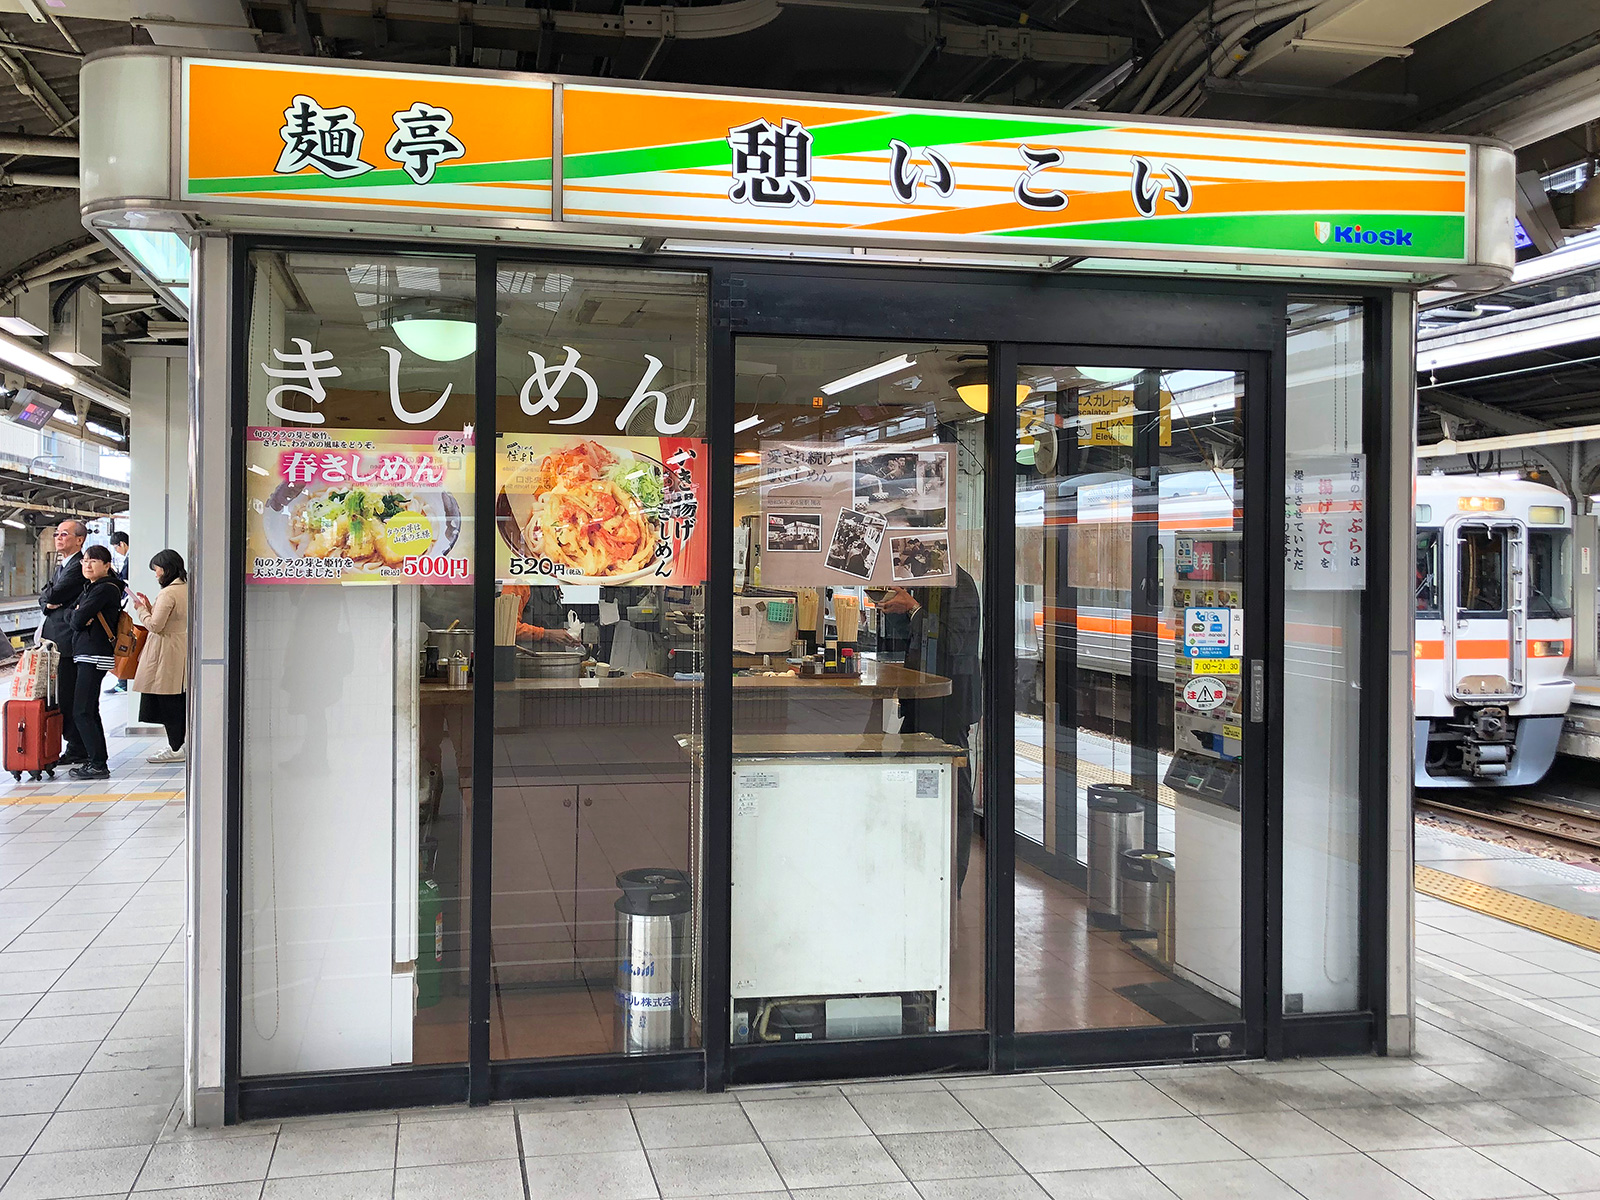 「麺亭いこい」の春きしめん @中村区JR名古屋駅5・6番線ホーム